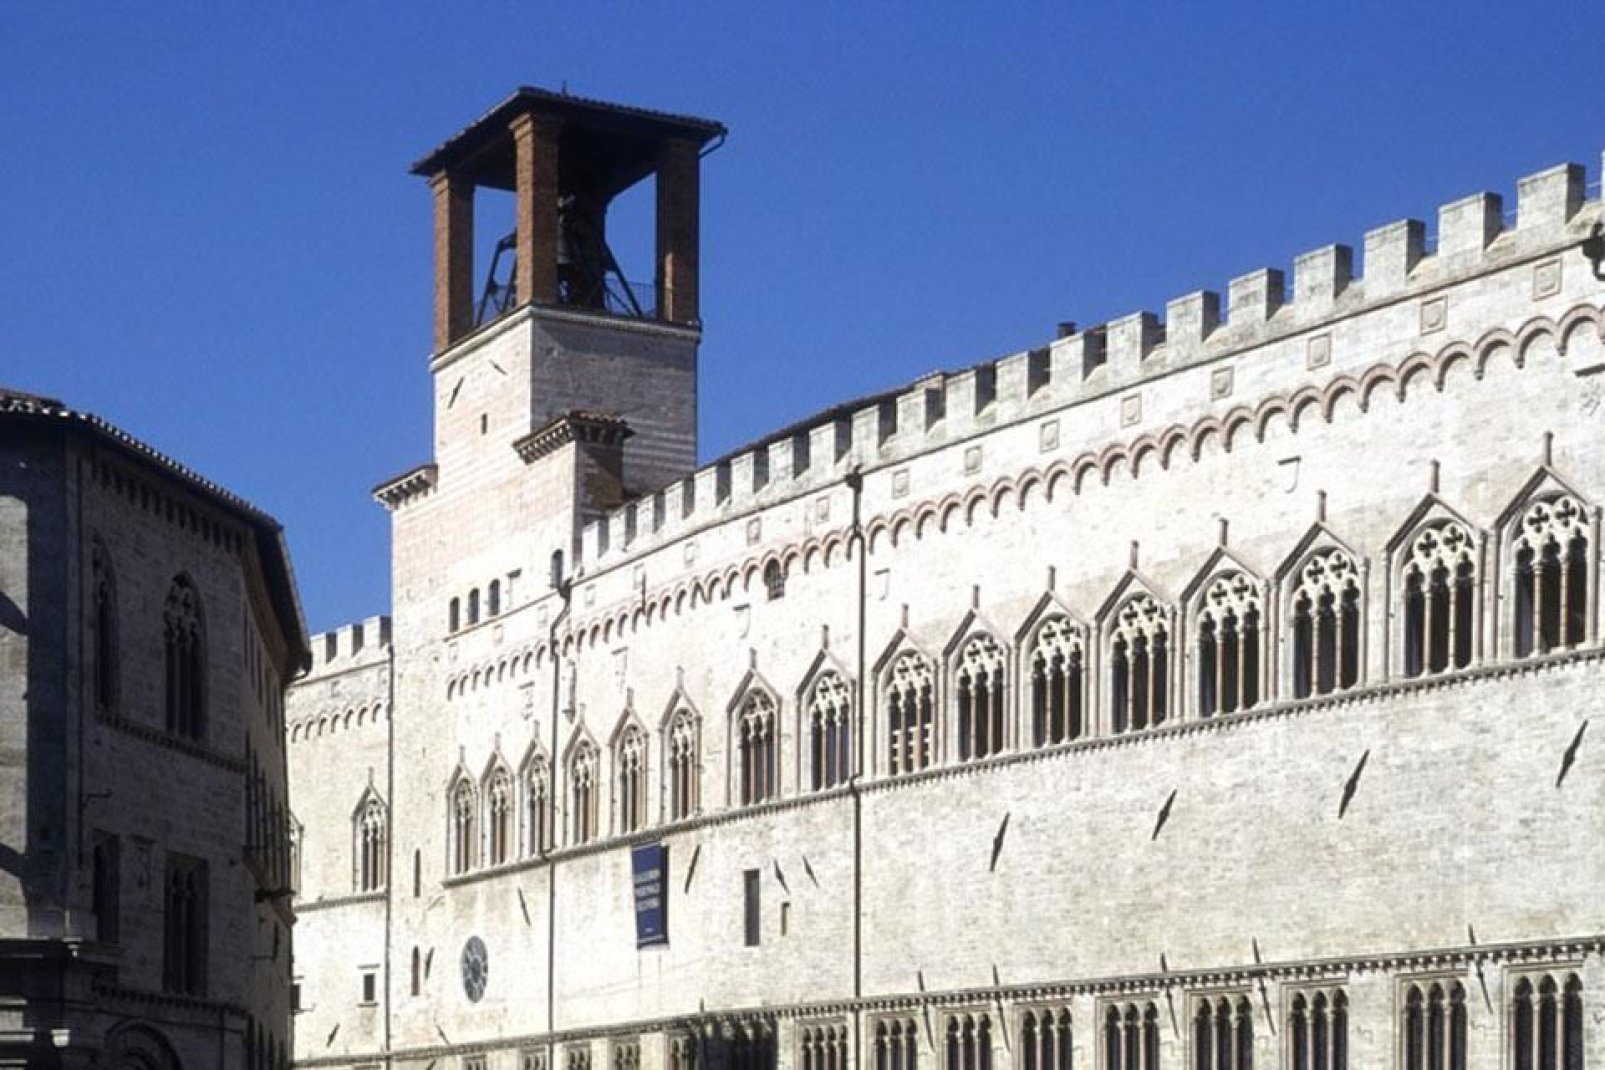 Edificato a Perugia tra il 1293 ed il 1443, il Palazzo dei Priori, ancora oggi sede comunale, è un esempio di arte del periodo comunale